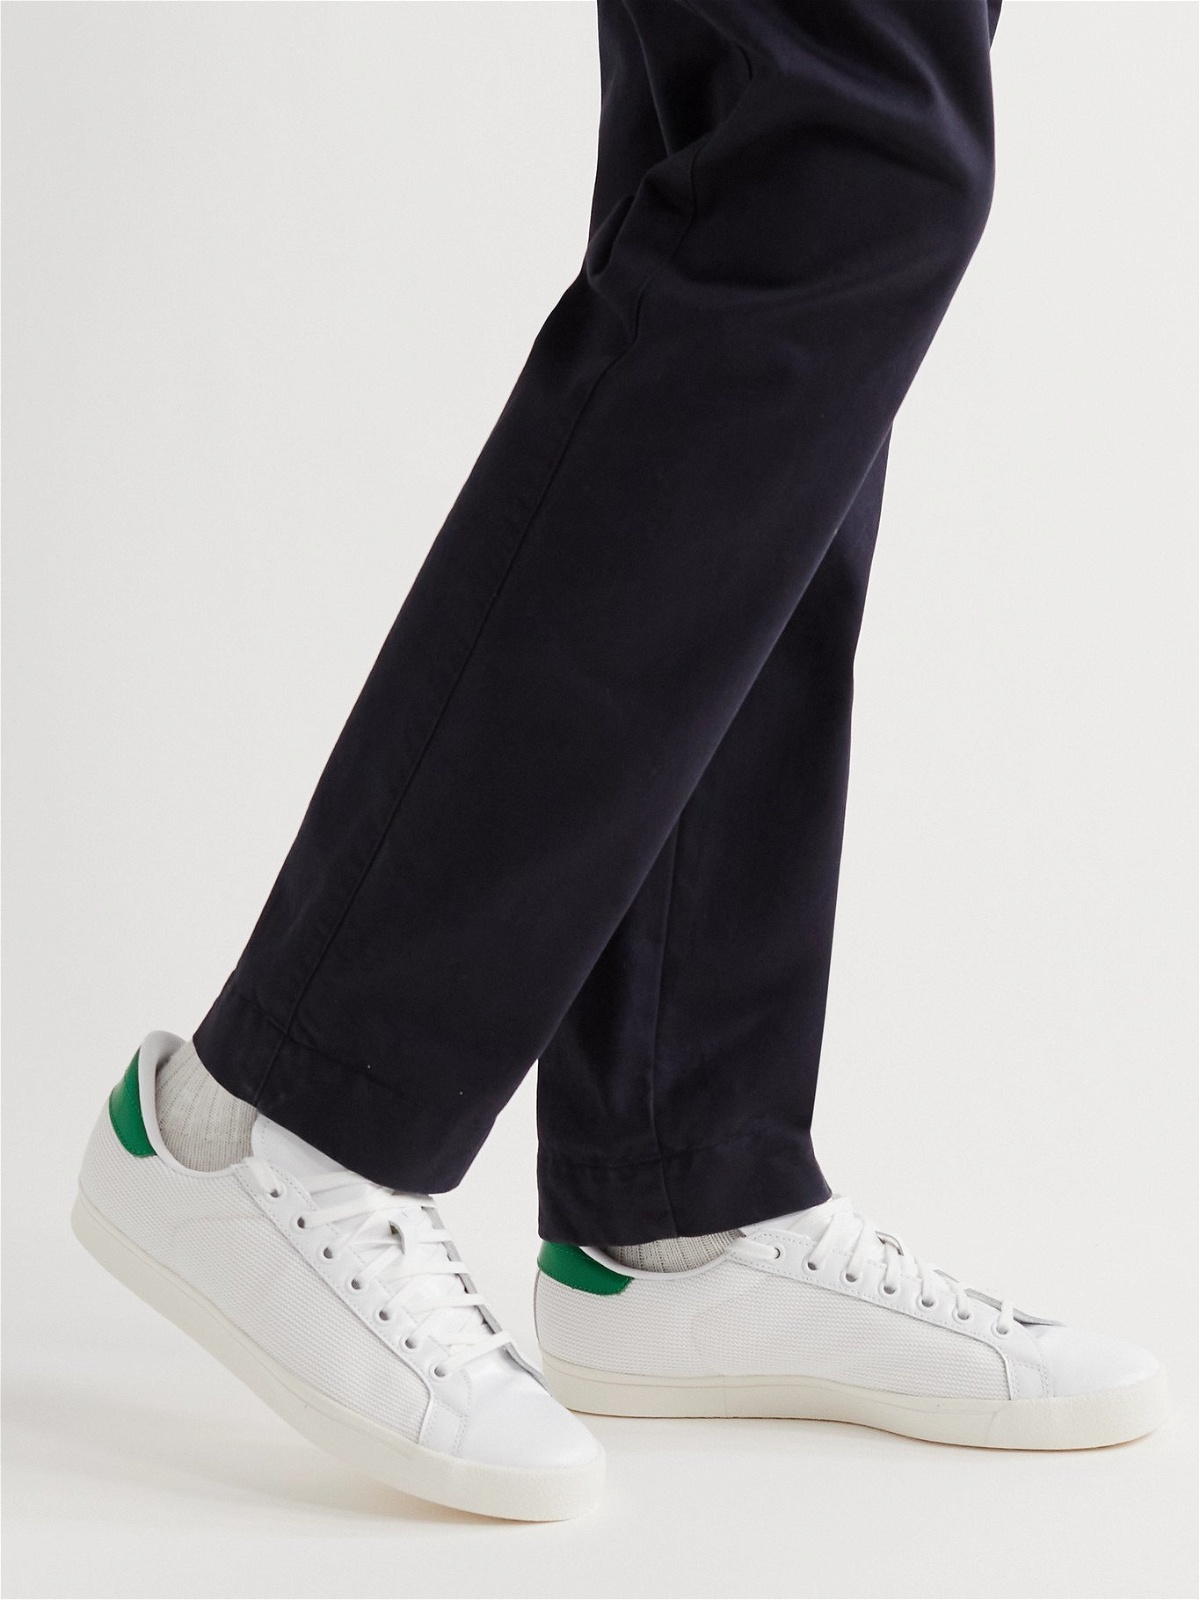 ADIDAS ORIGINALS Rod Laver Mesh Leather Sneakers - White adidas Originals